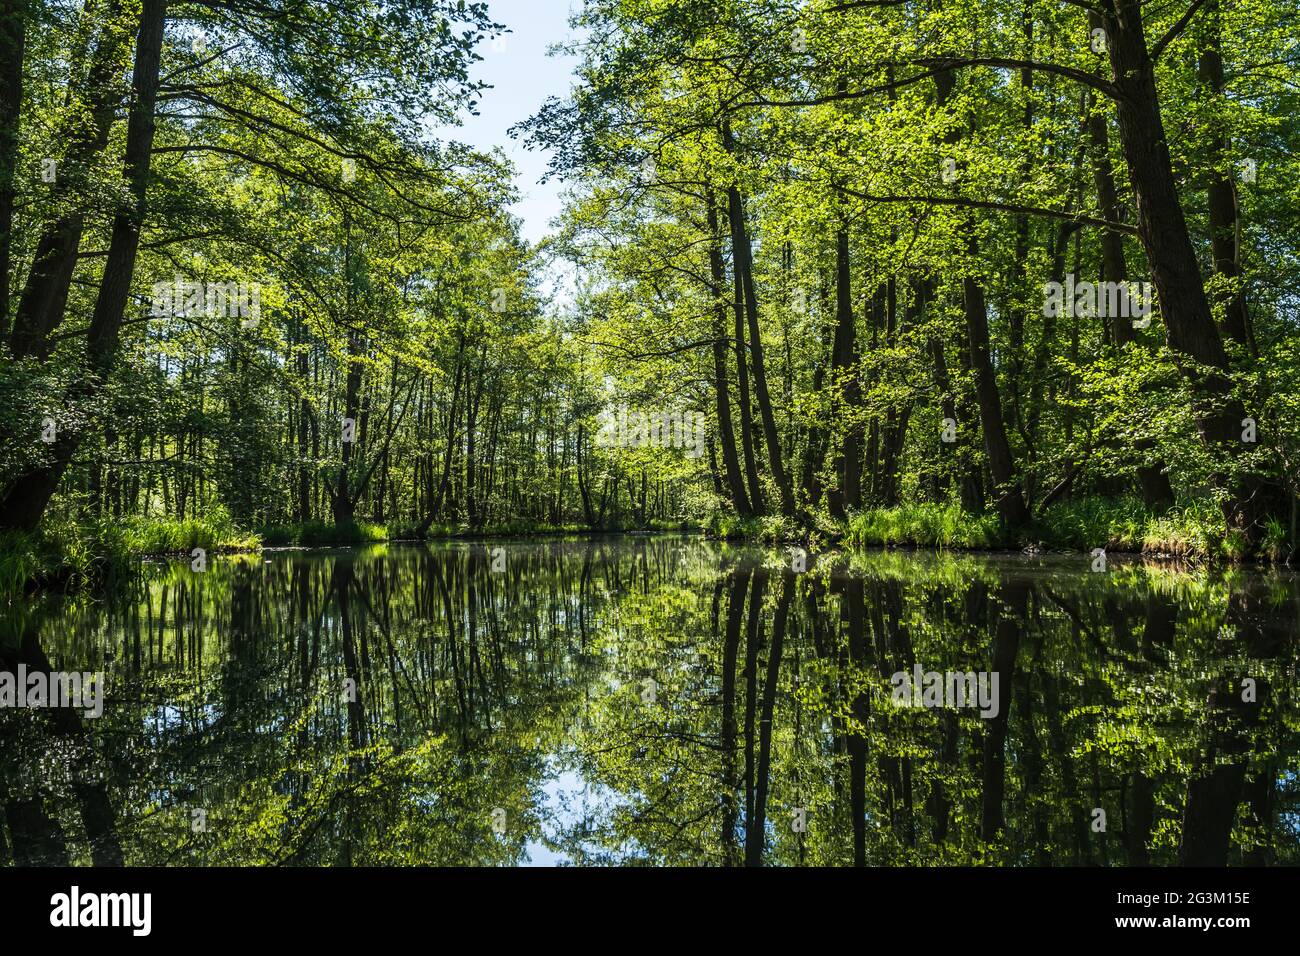 Canal d'eau dans la réserve de biosphère de la forêt de Spree (Spreewald) dans l'État de Brandebourg, Allemagne Banque D'Images